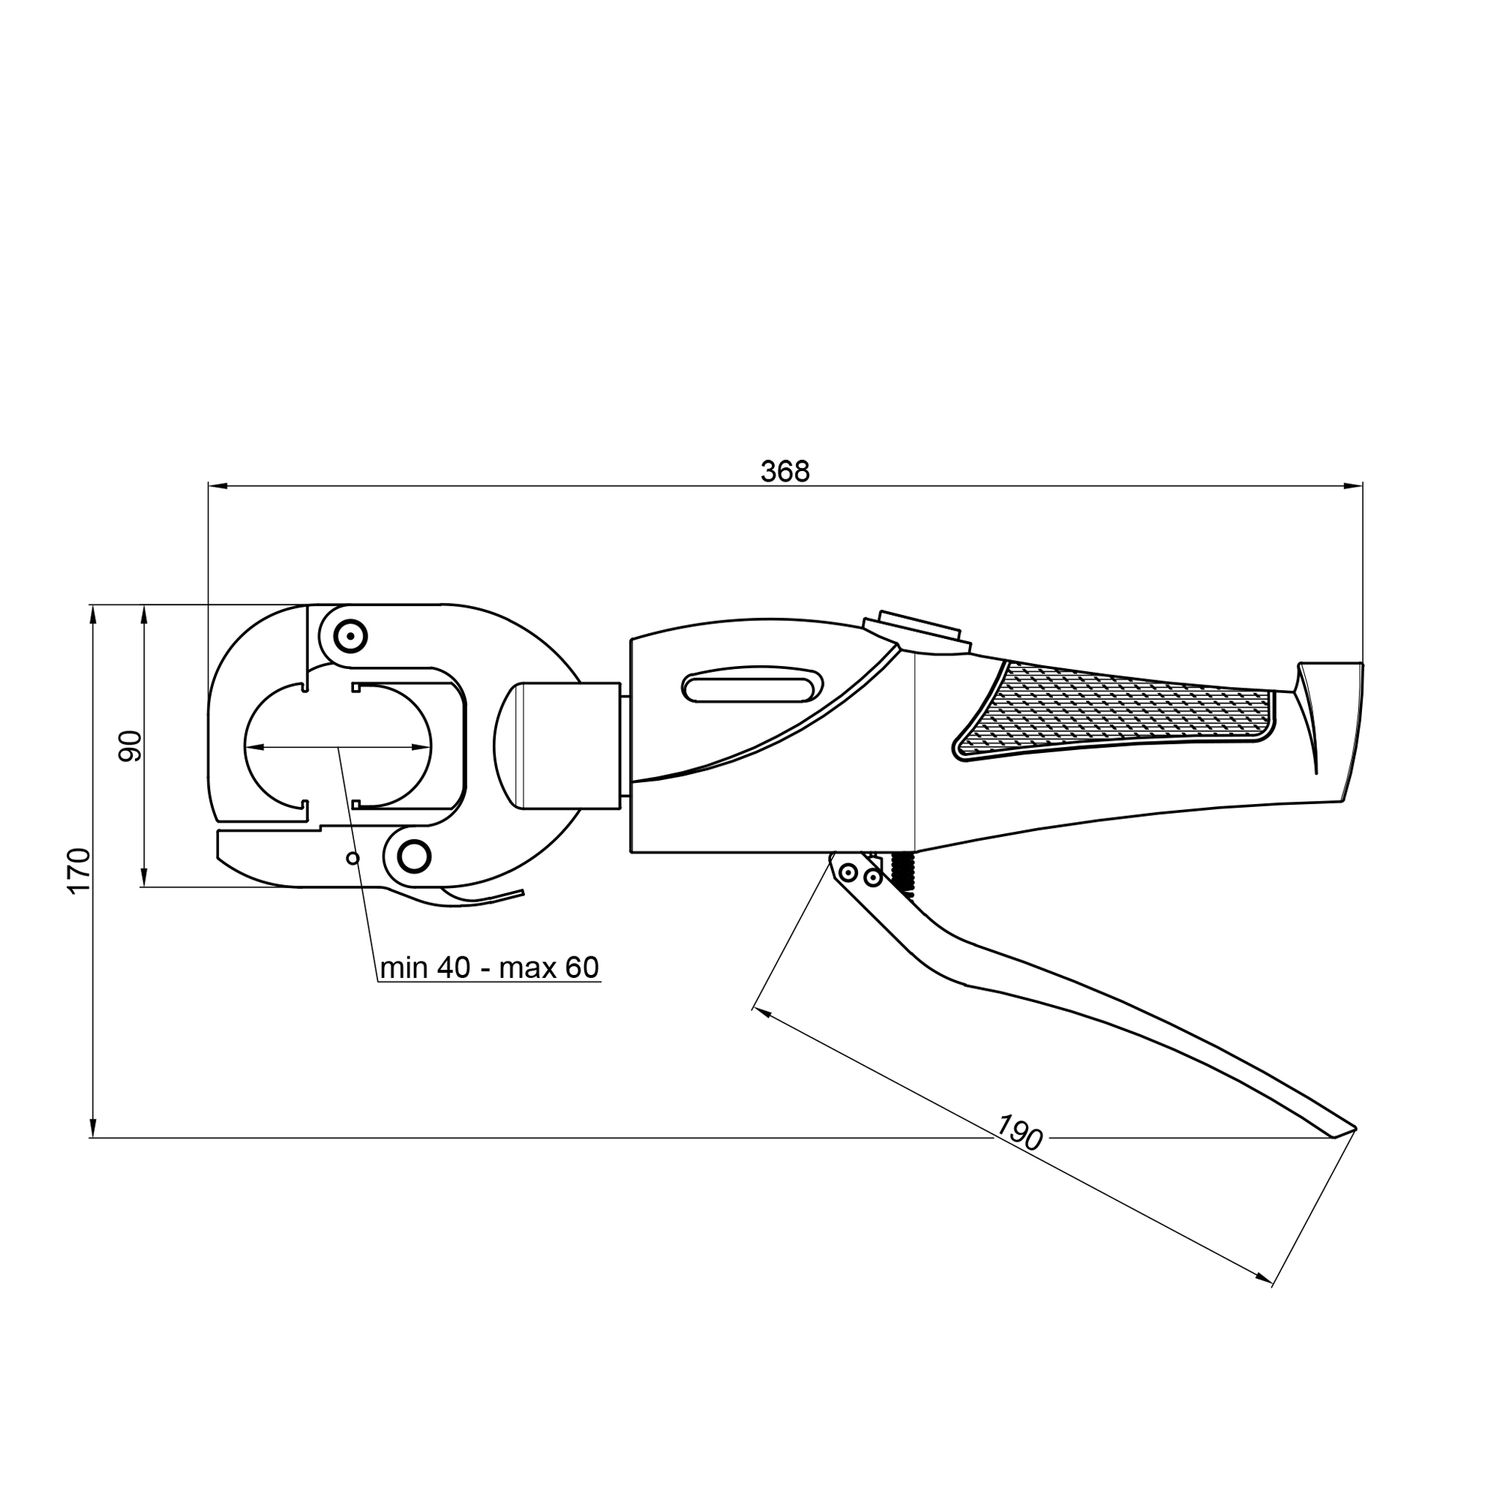 Пресс инструмент Icma 16-26 ручной гидравлический